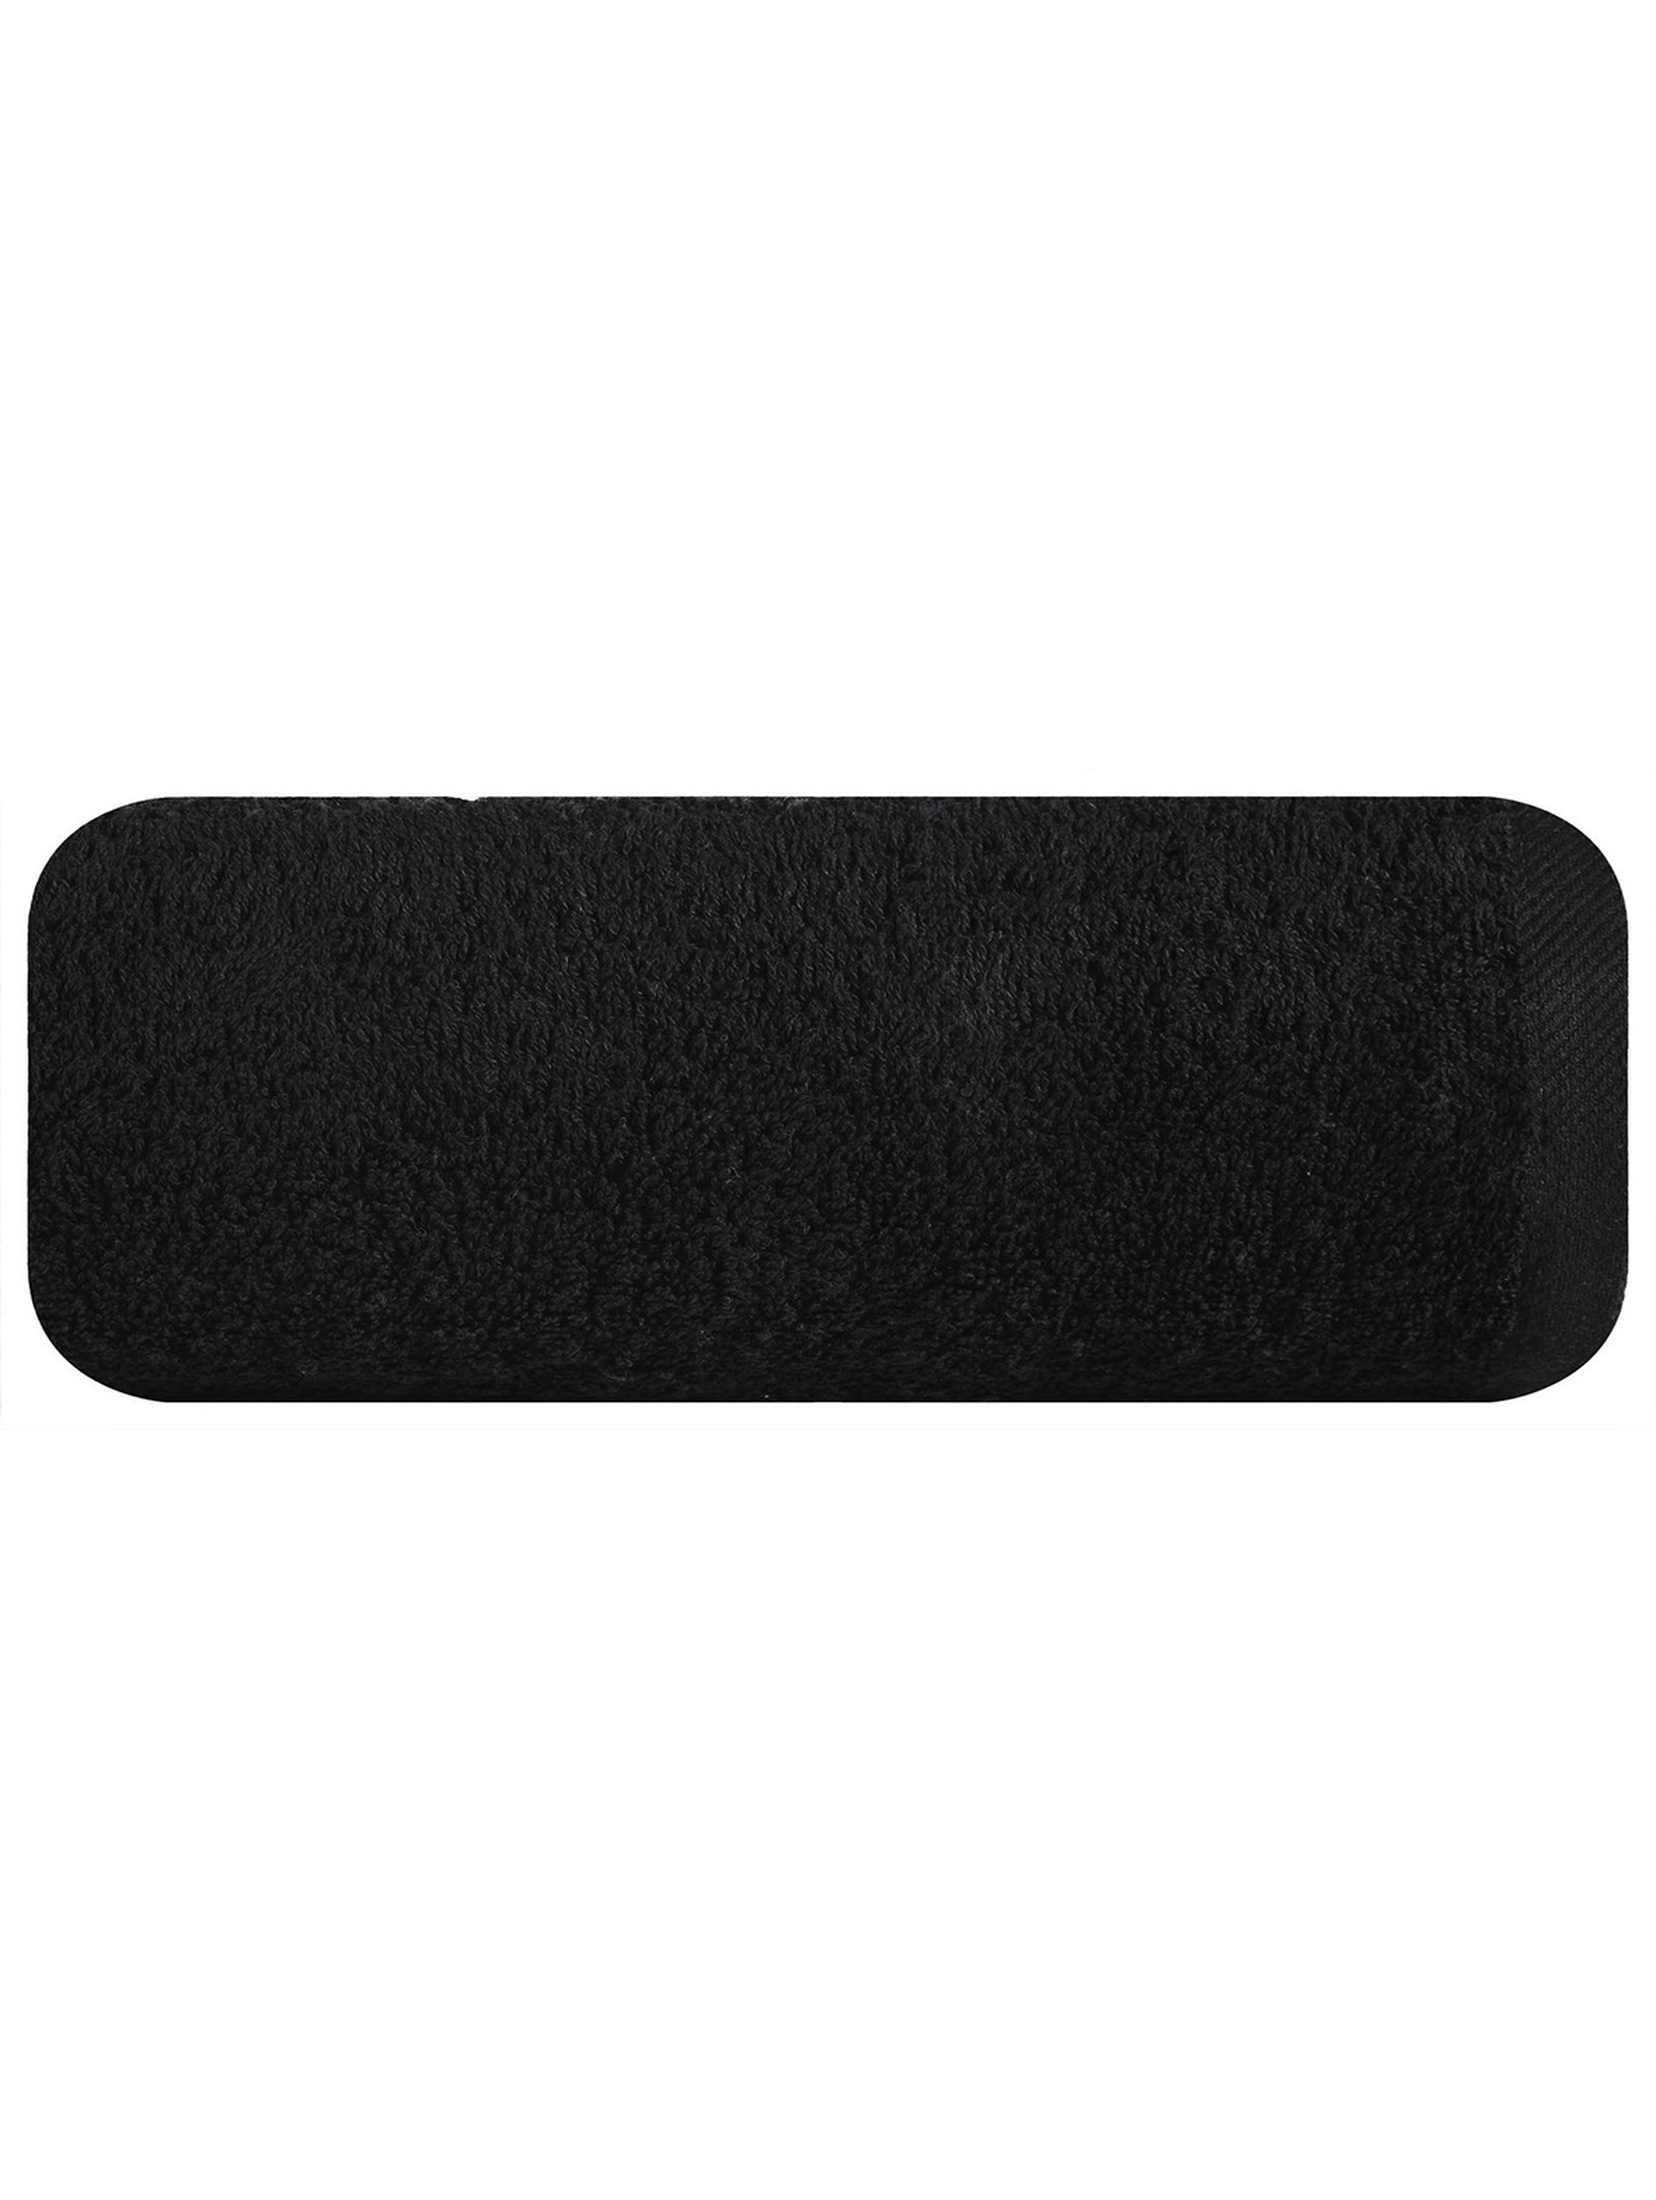 Ręcznik gładki2 (17) 70x140 cm czarny